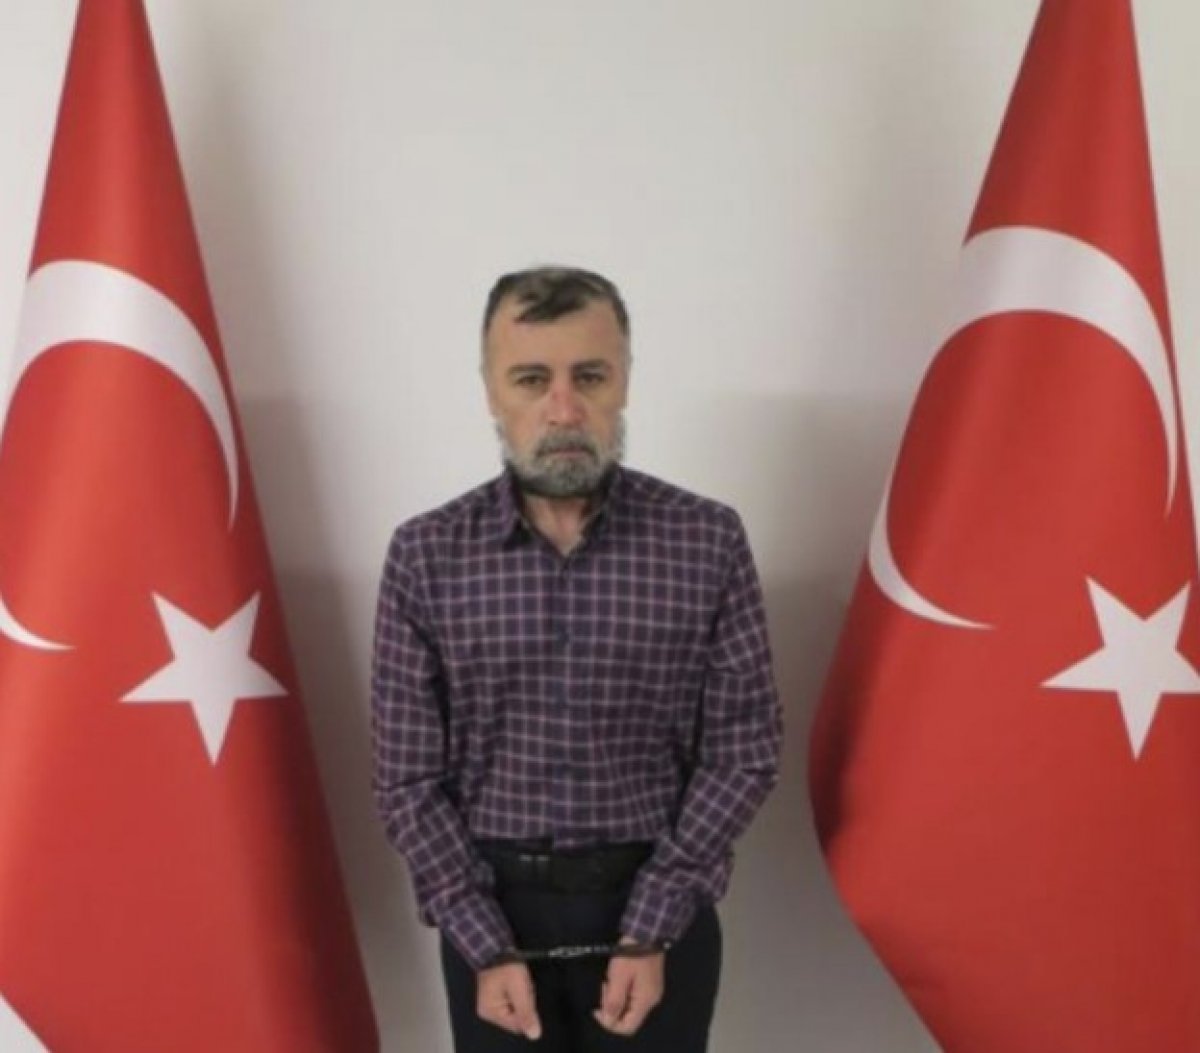 Hablemitolu suikast soruturmas: Nuri Gkhan Bozkr adliyeye sevk edildi